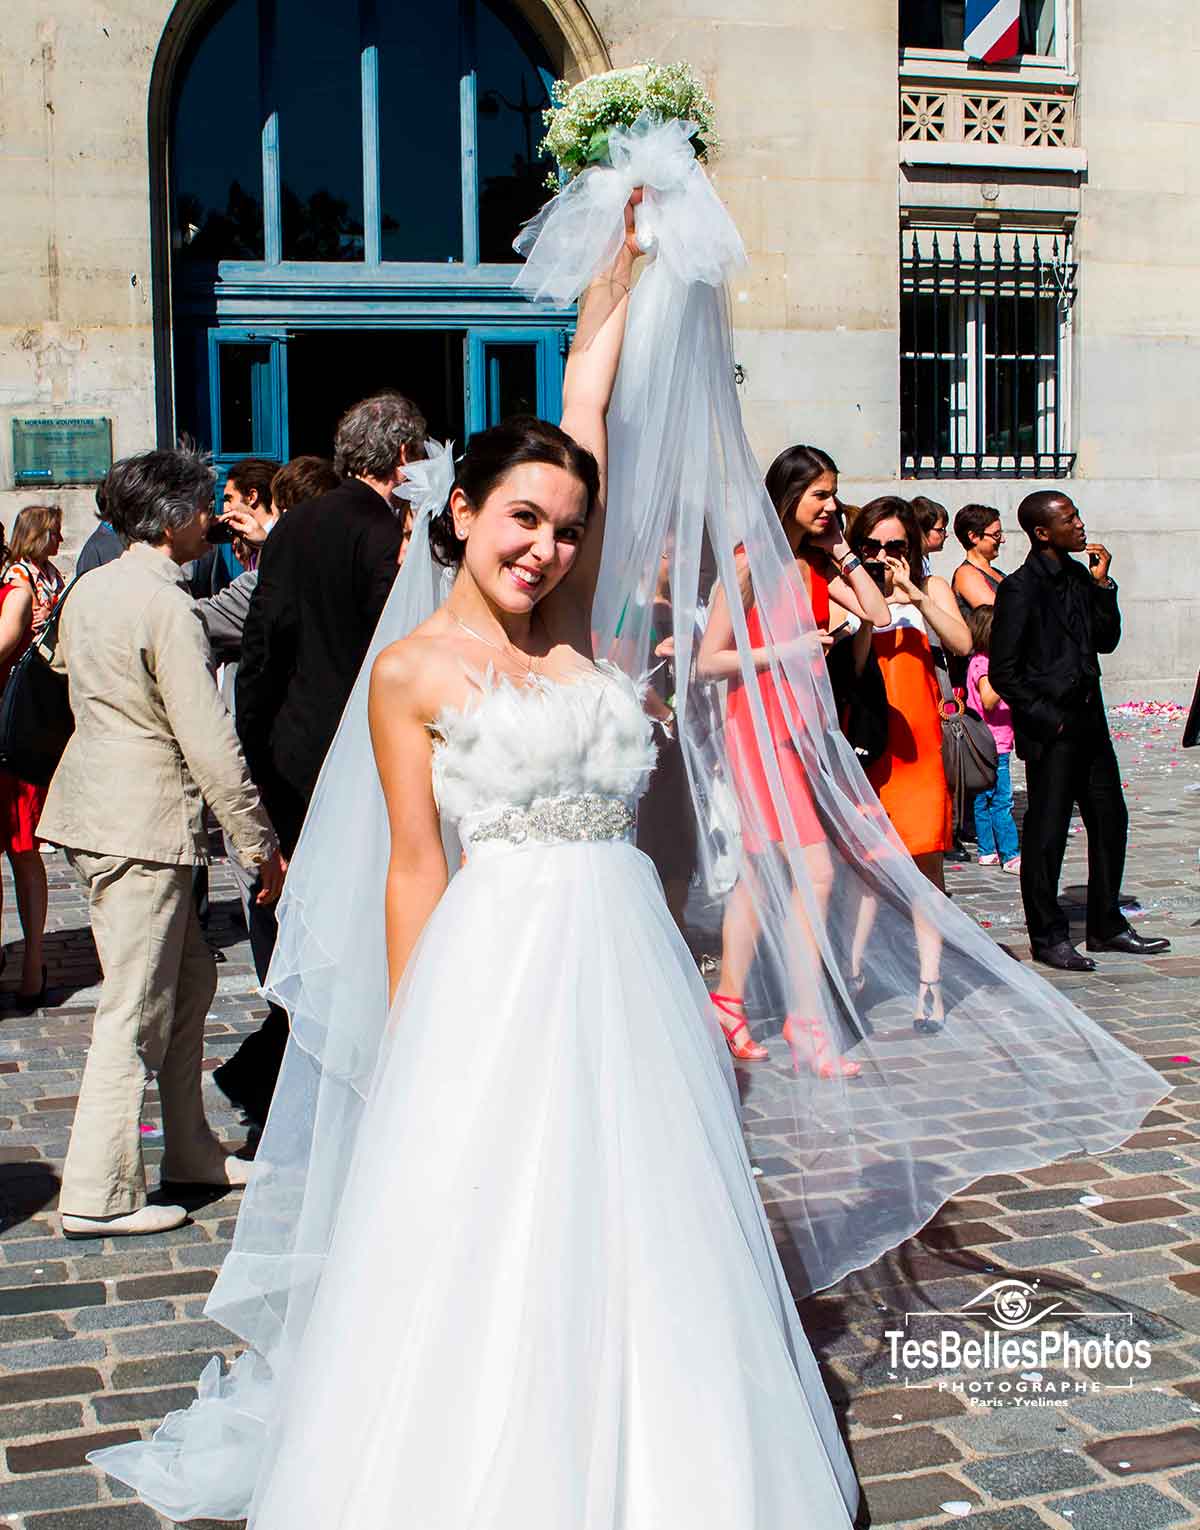 Photographe de mariage Paris, photo portrait mariage Paris